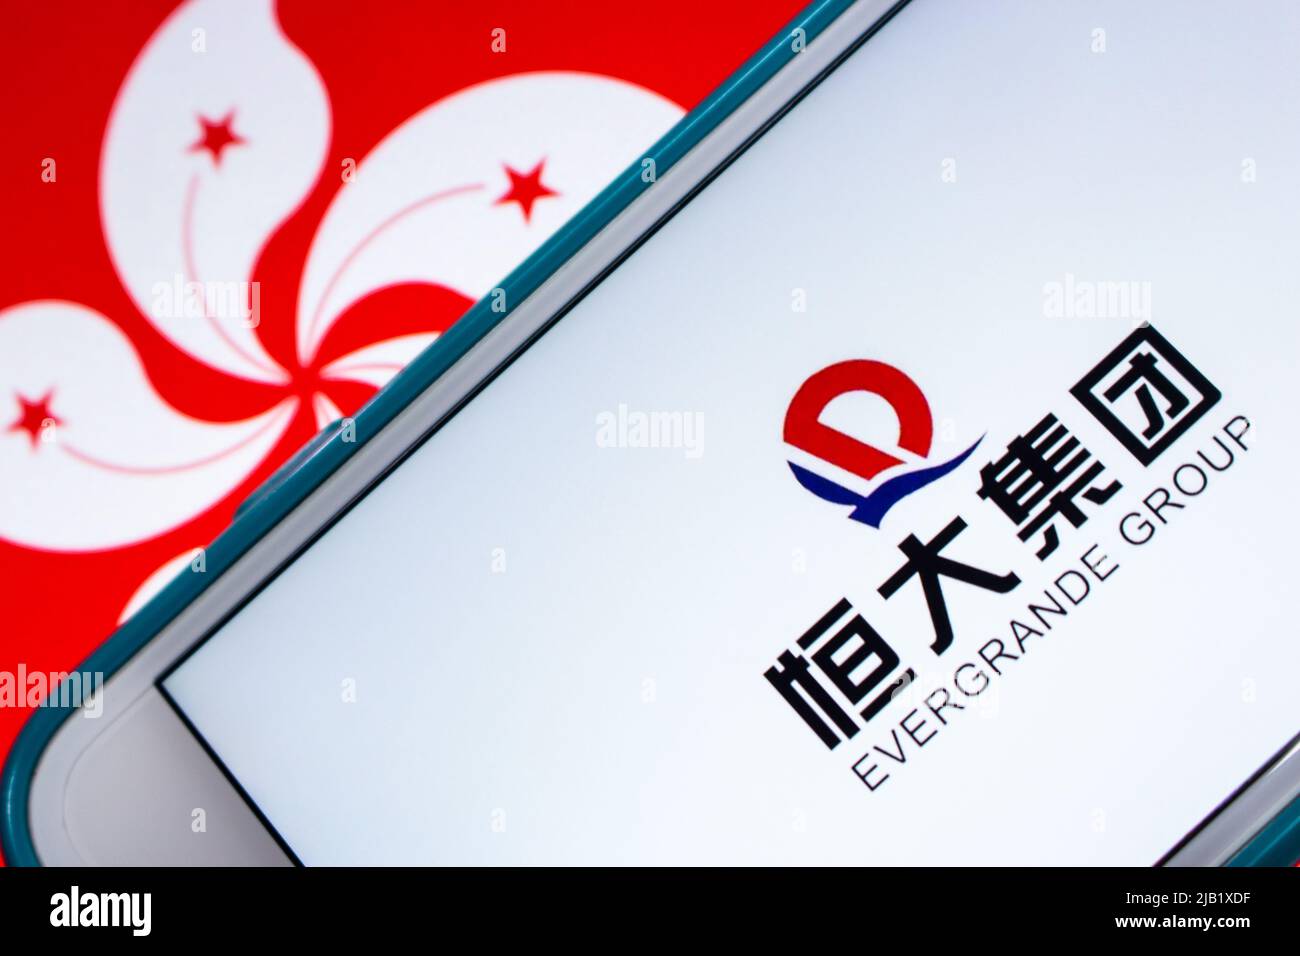 Logo der Evergrande Group (Evergrande Real Estate Group, vormals Hengda Group), Chinas führender Immobilienentwickler, auf dem iPhone unter der Flagge von Hongkong. Stockfoto